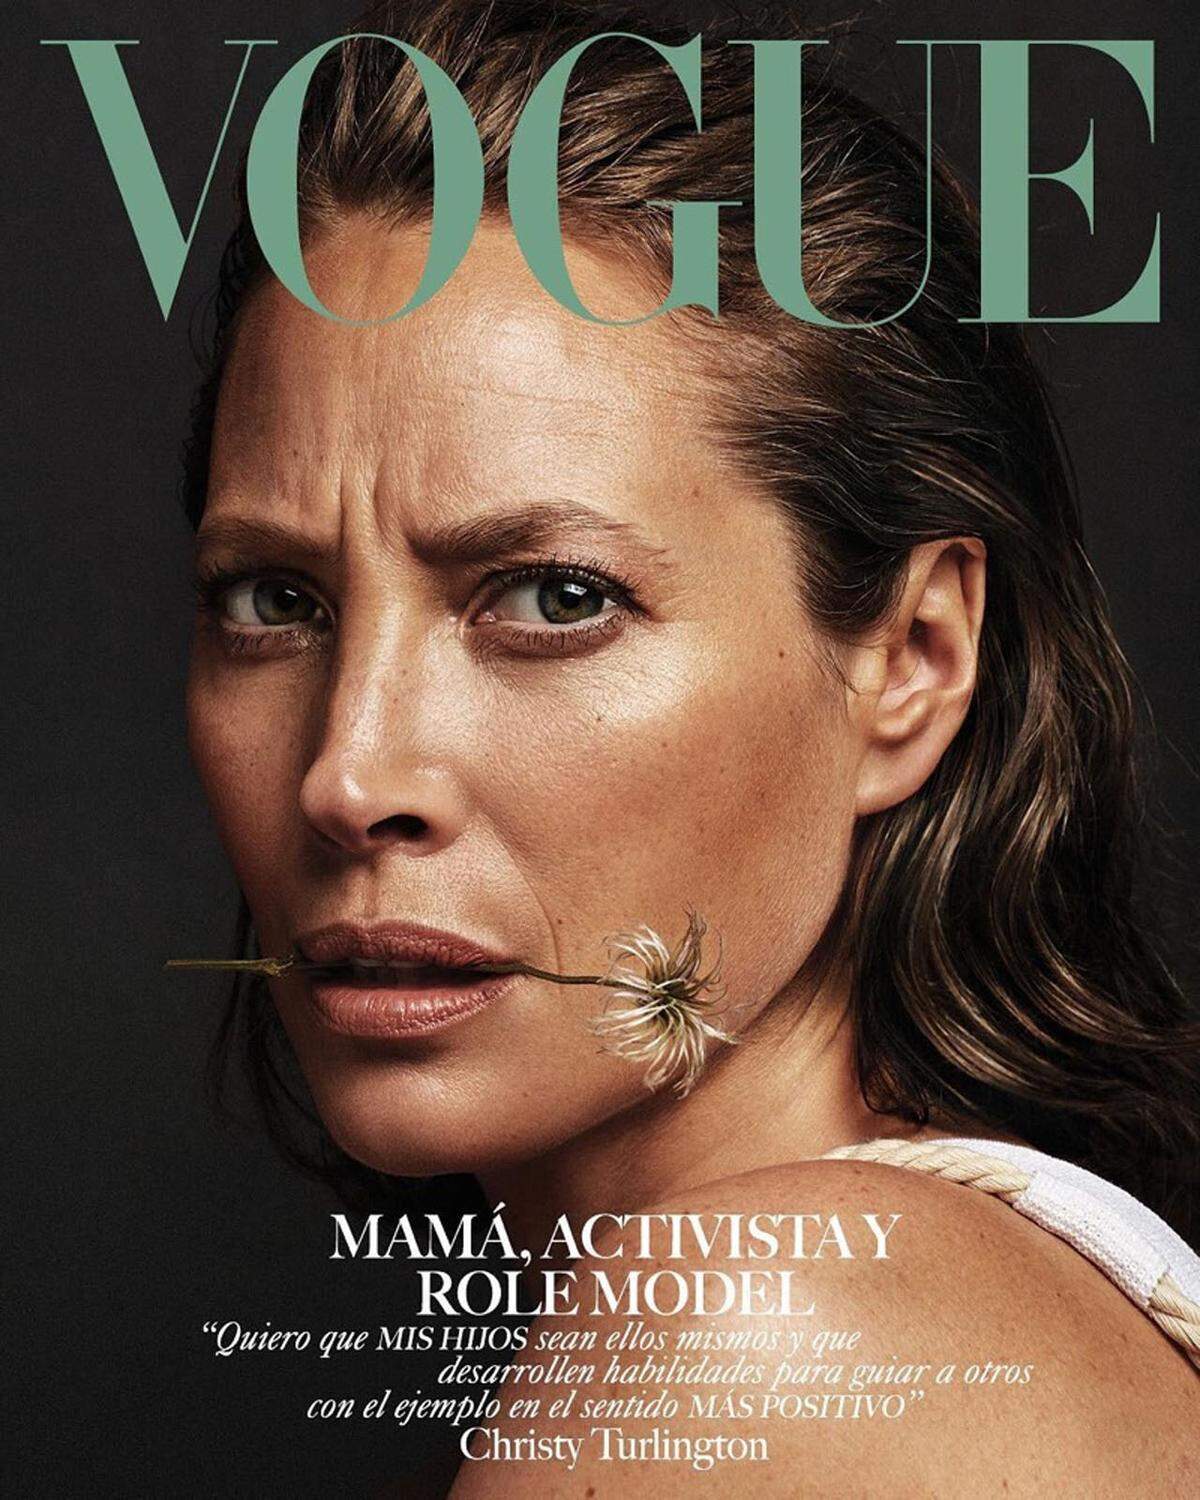 Kaum gealtert scheint auch  Christy Turlington auf dem Mai-Cover der mexikanischen "Vogue" zu sein. Und das, obwohl man die Falten nicht wegretuschiert hat.